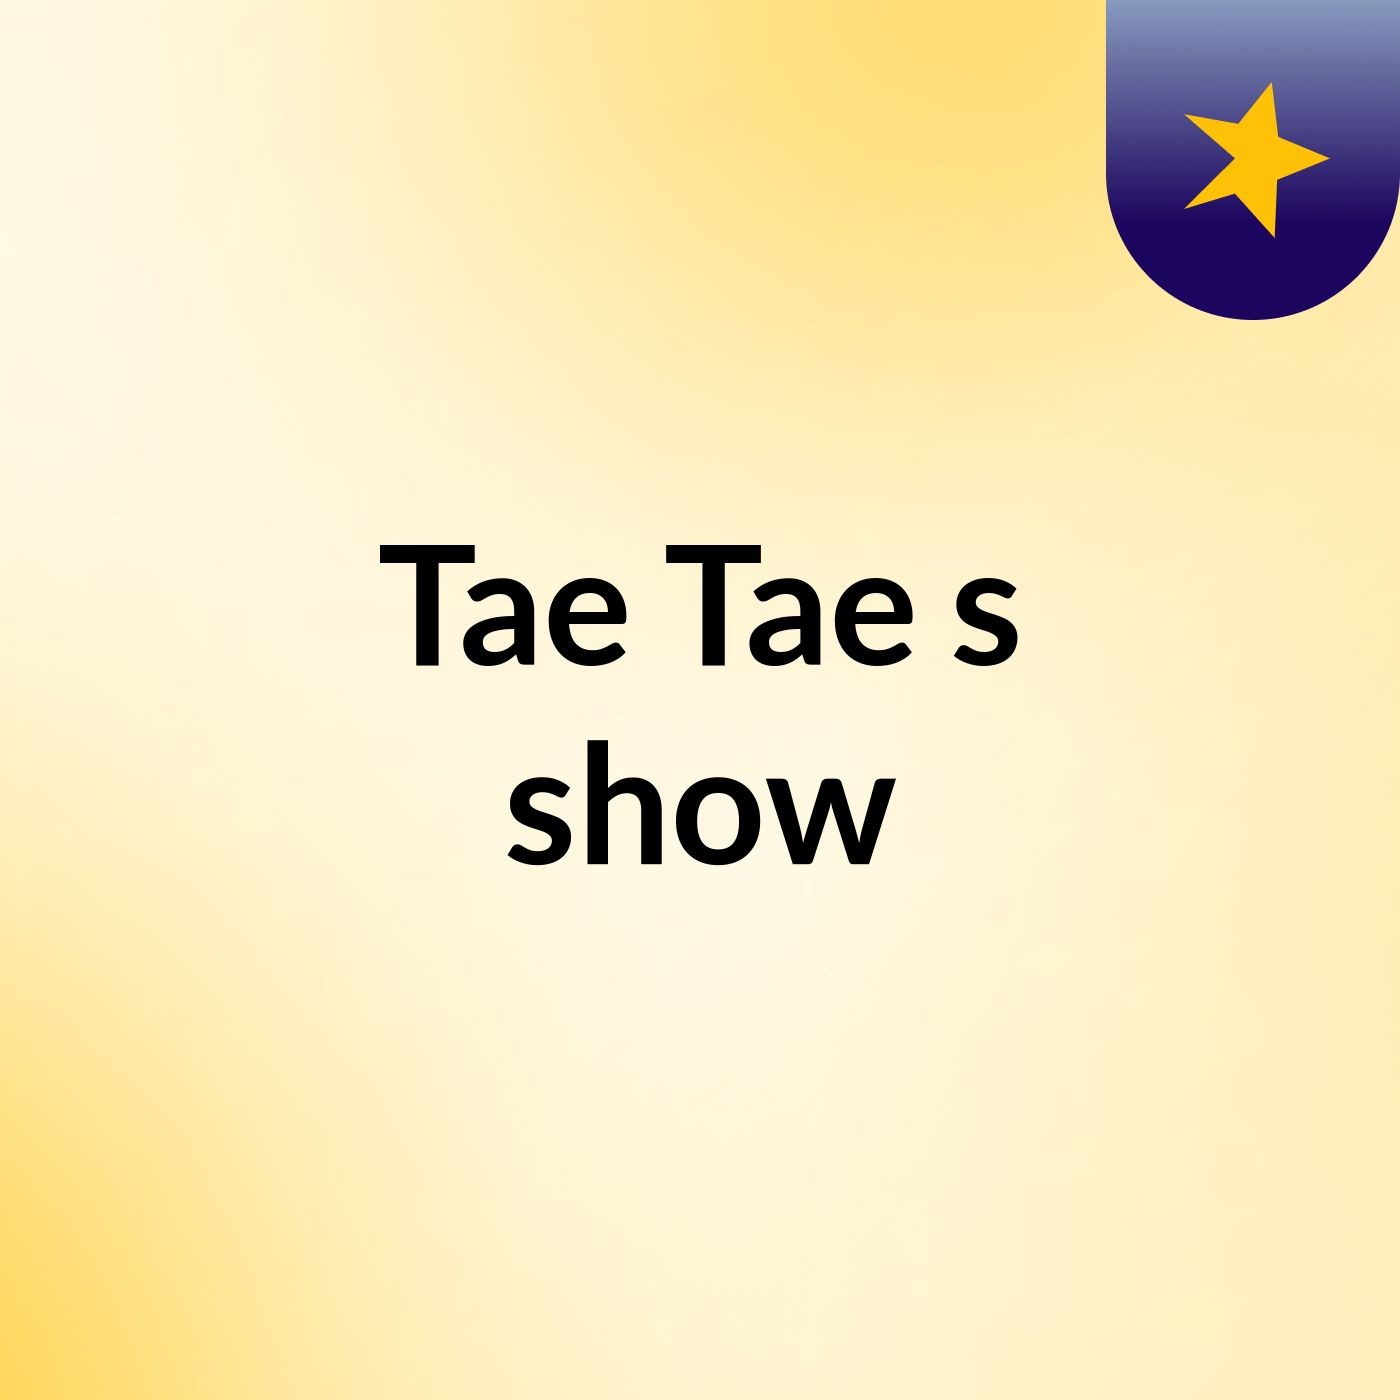 Tae Tae's show